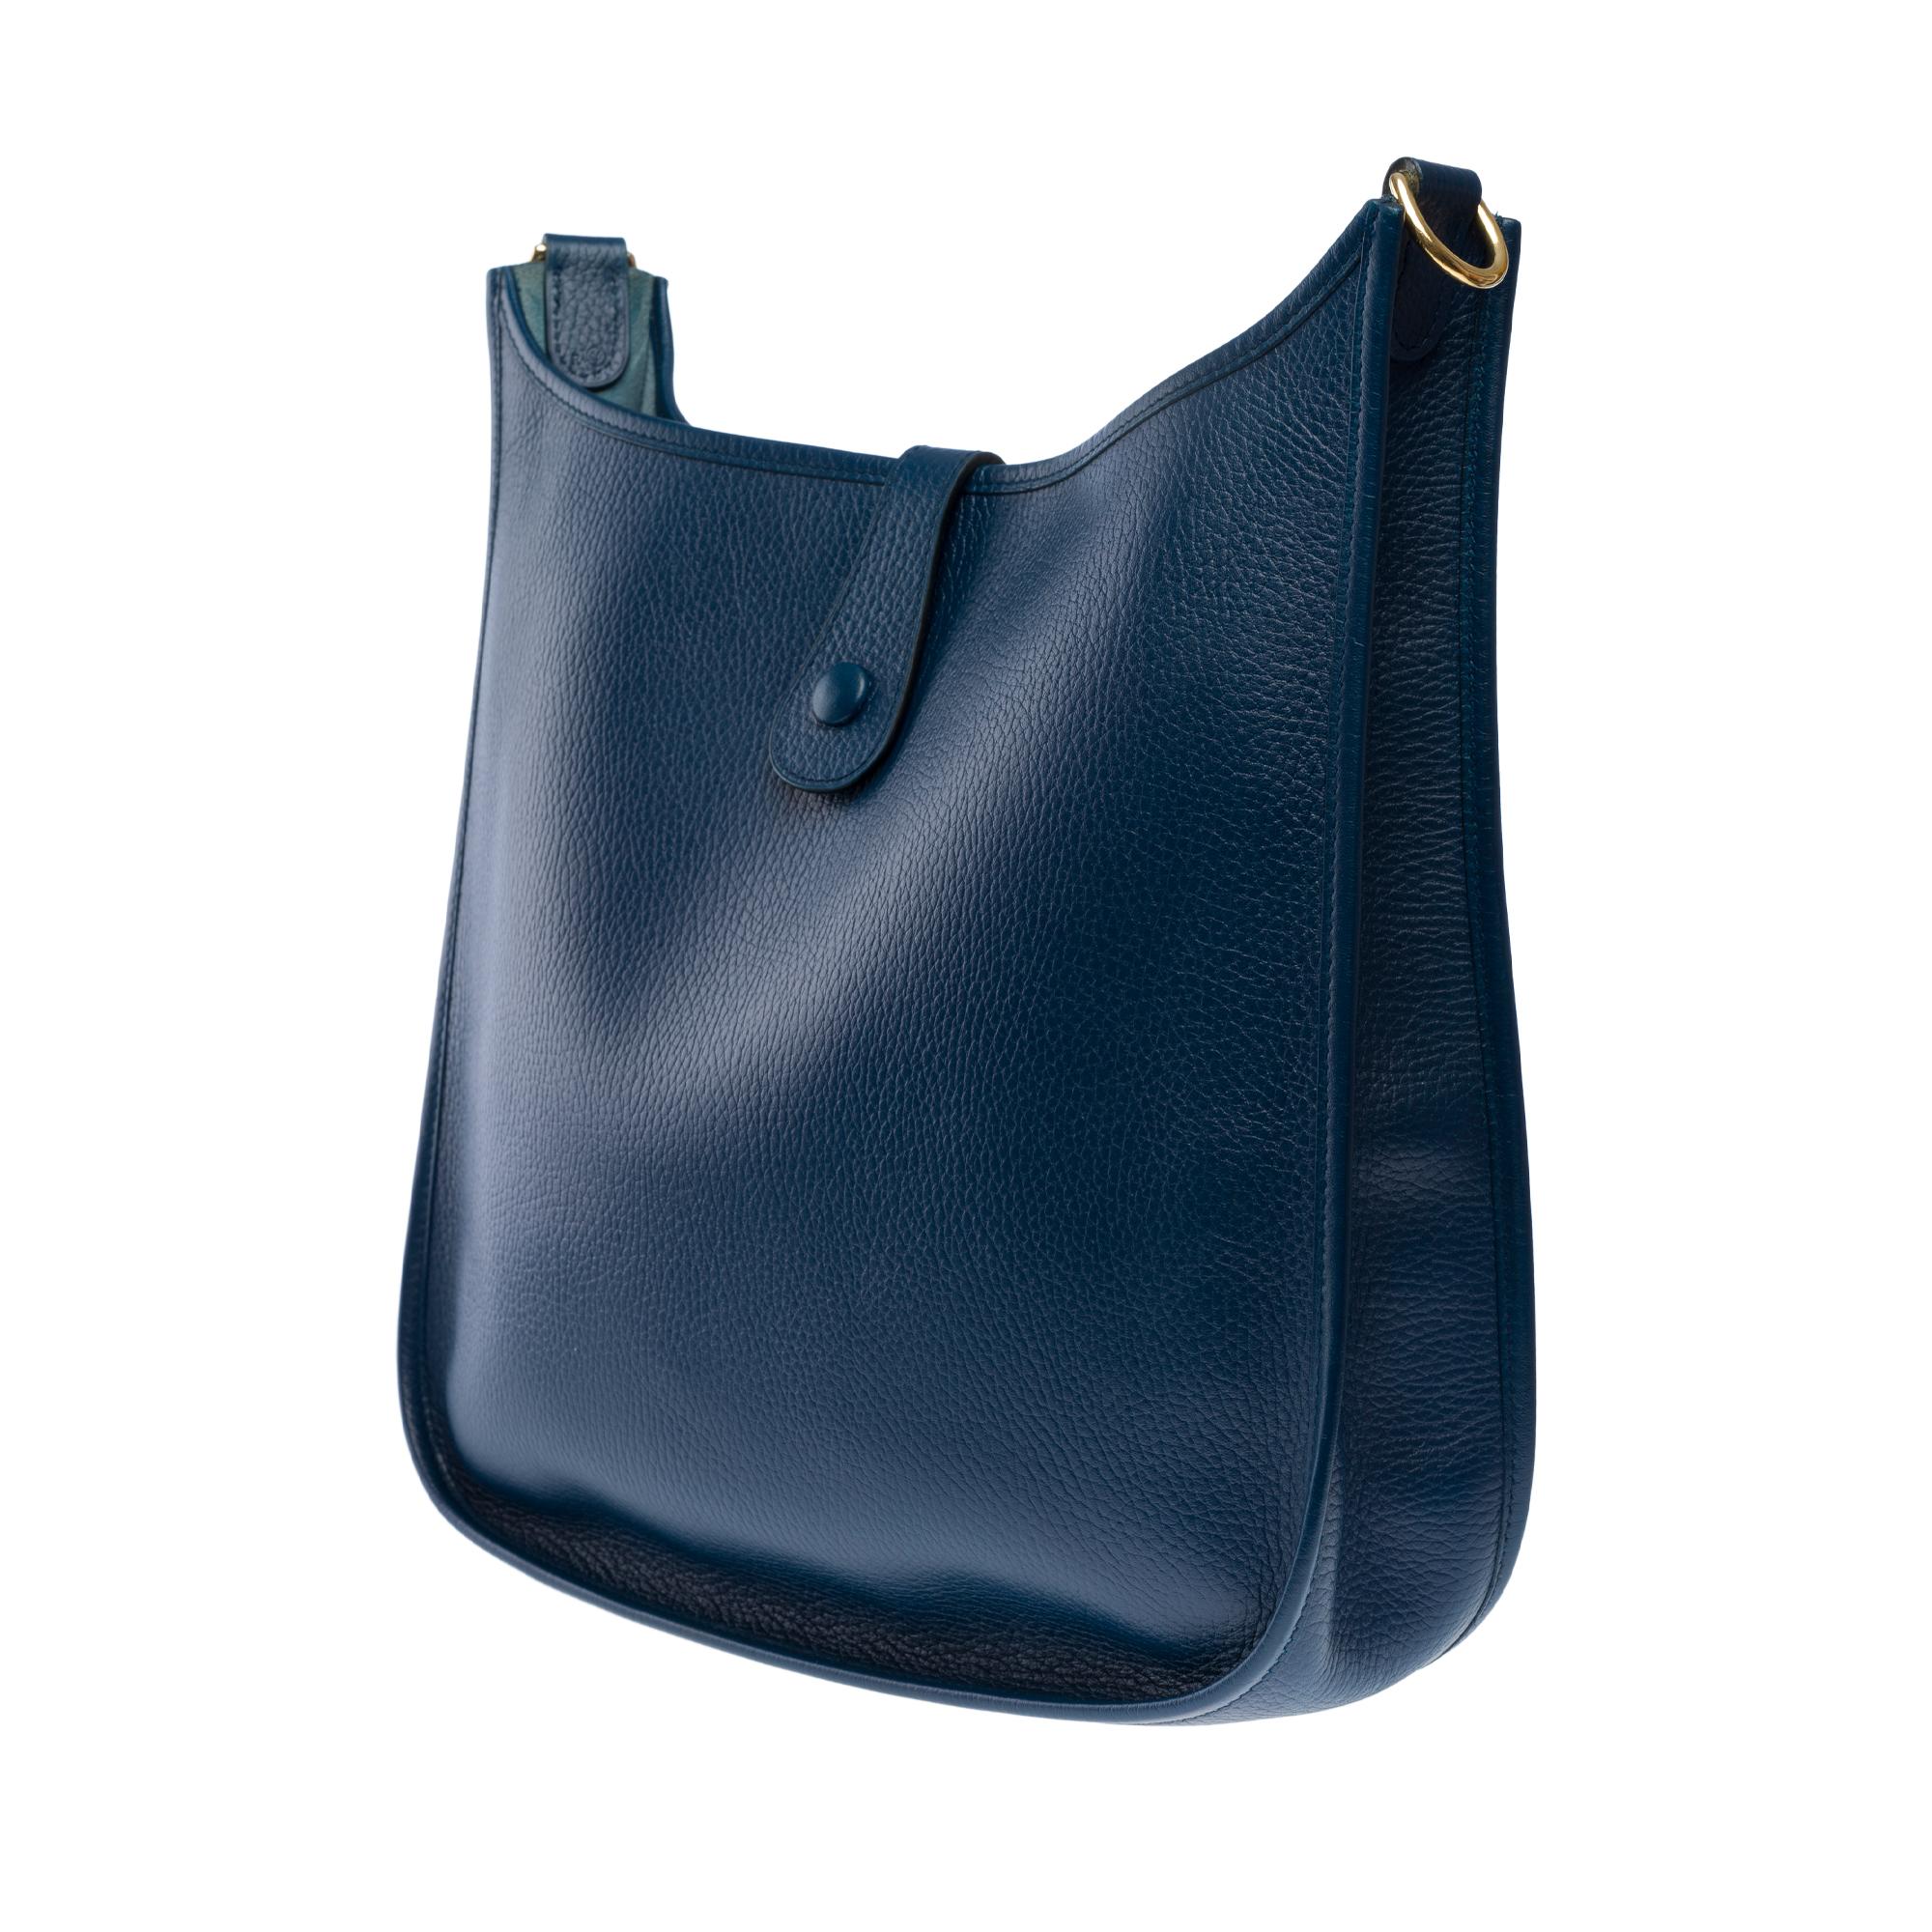 Hermès Evelyne GM  shoulder bag in Navy Blue Taurillon Clemence leather, GHW 3